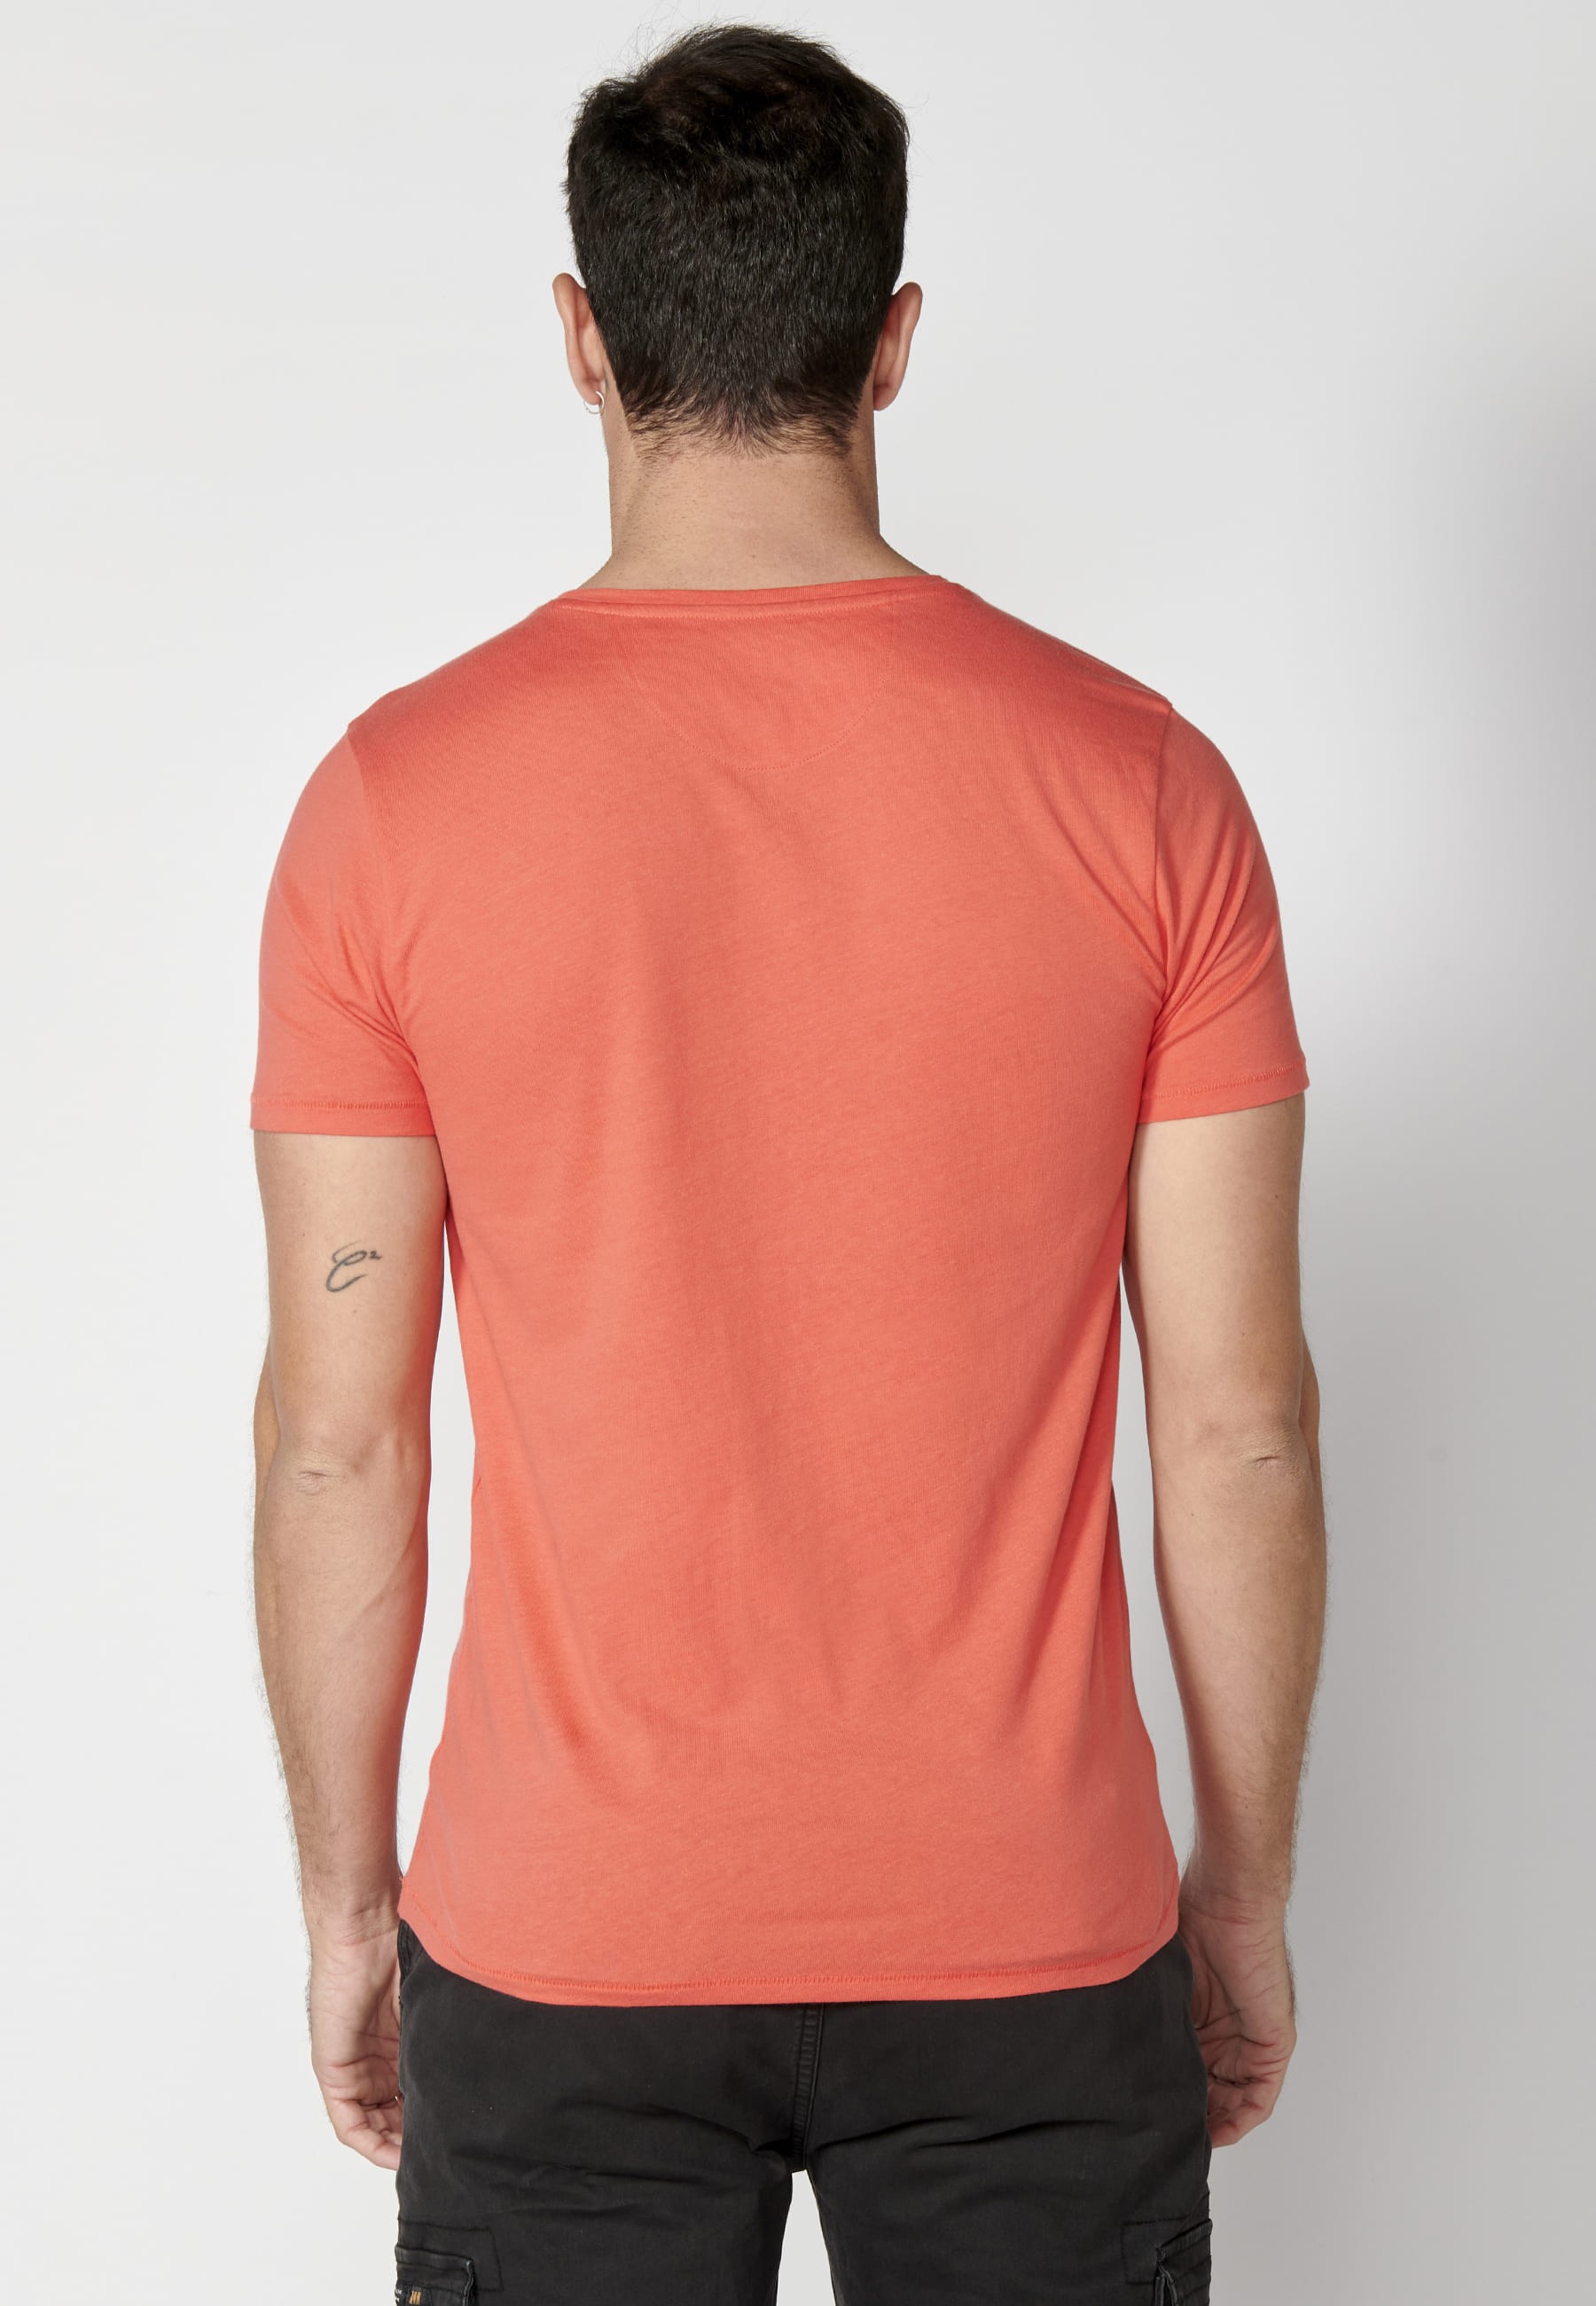 Kurzärmliges Baumwoll-T-Shirt mit rosa Frontdruck für Herren